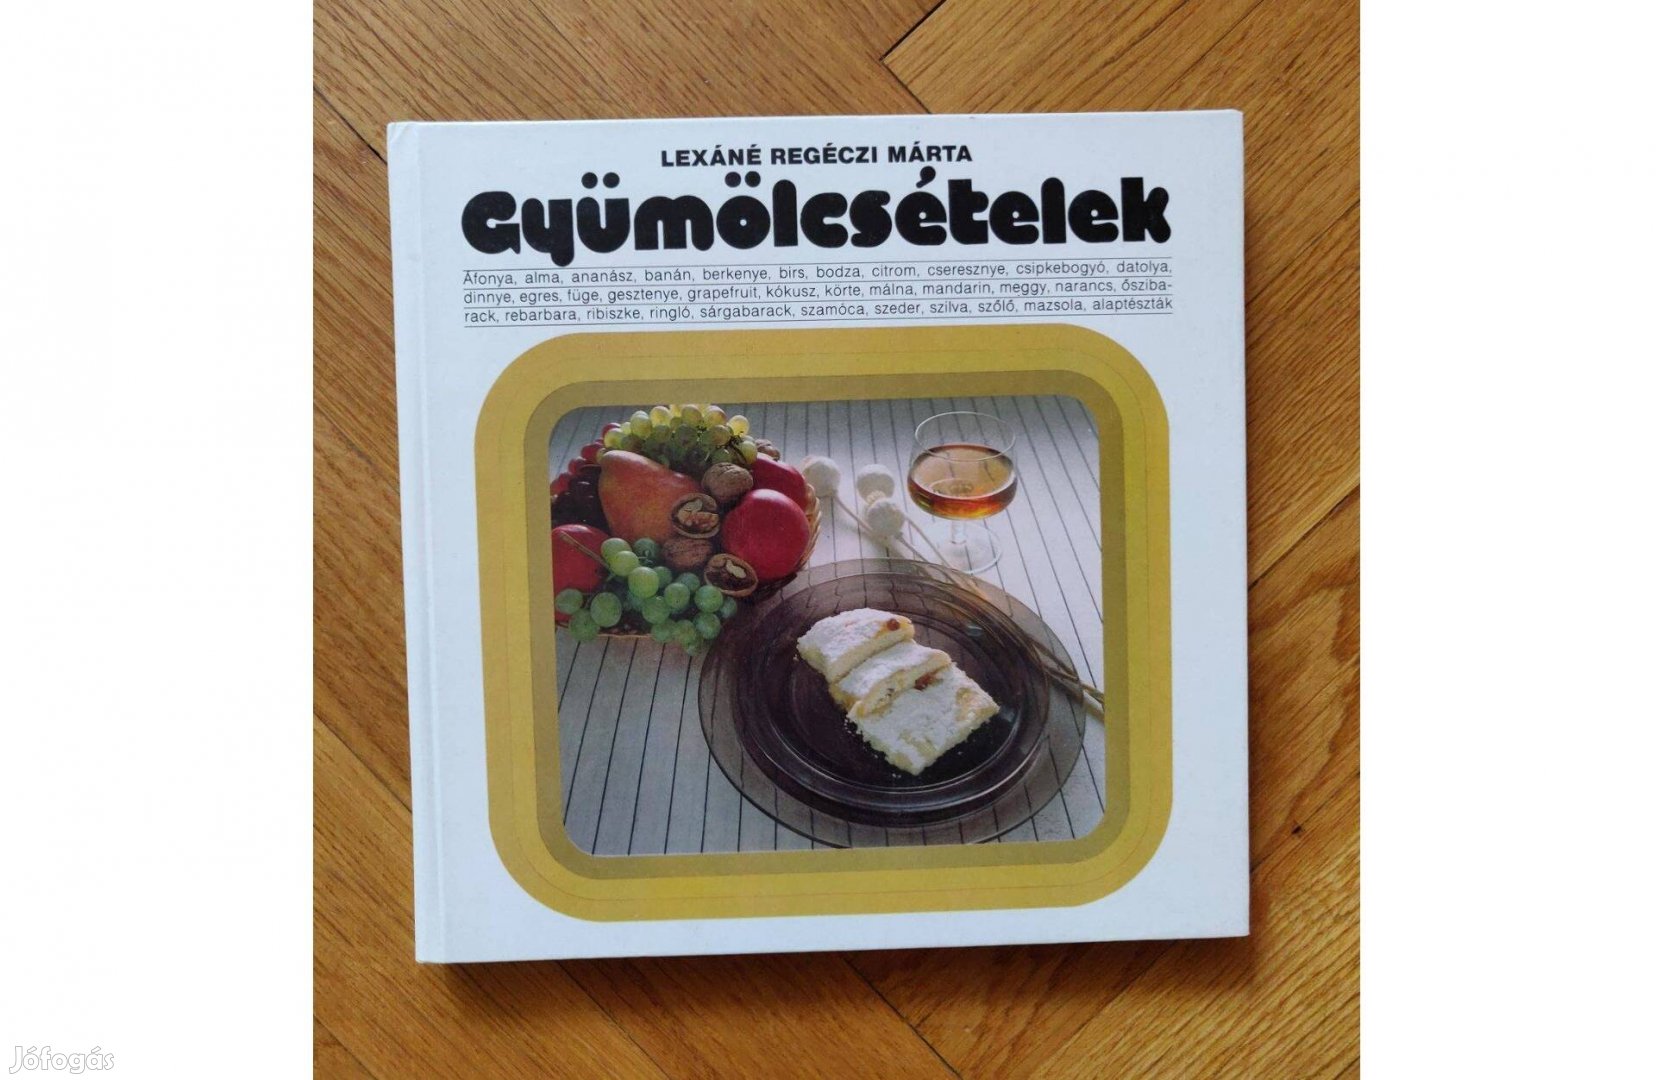 Gyümölcsételek könyv - szakácskönyv recept gasztronómia